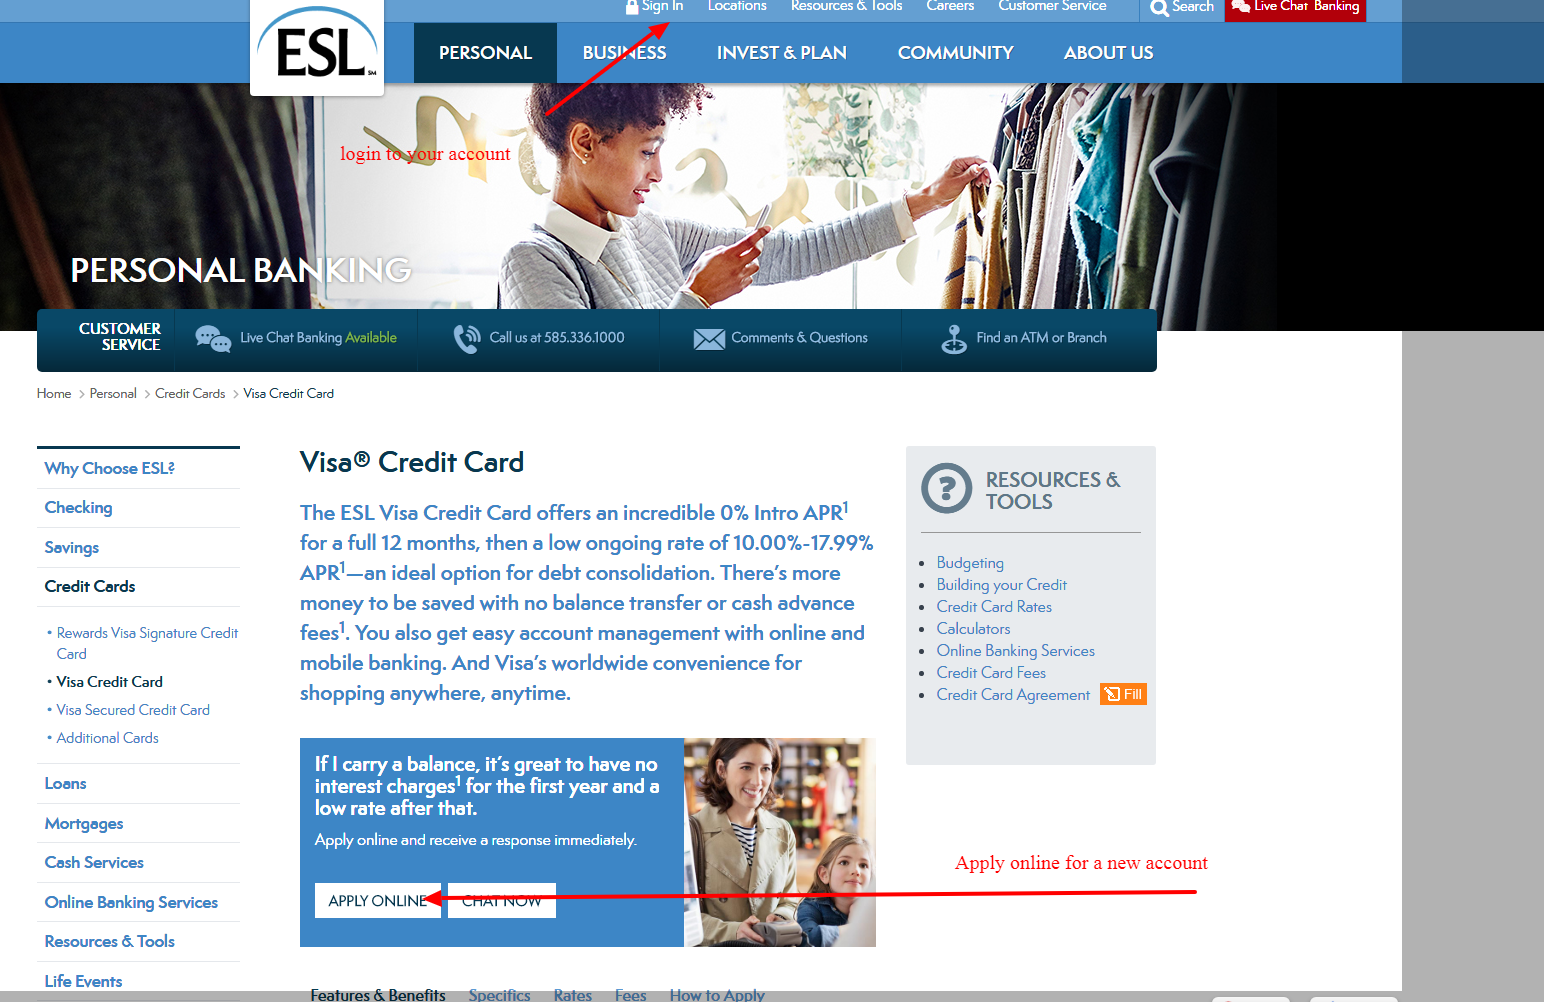 log in to esl fcu visa secured credit card account